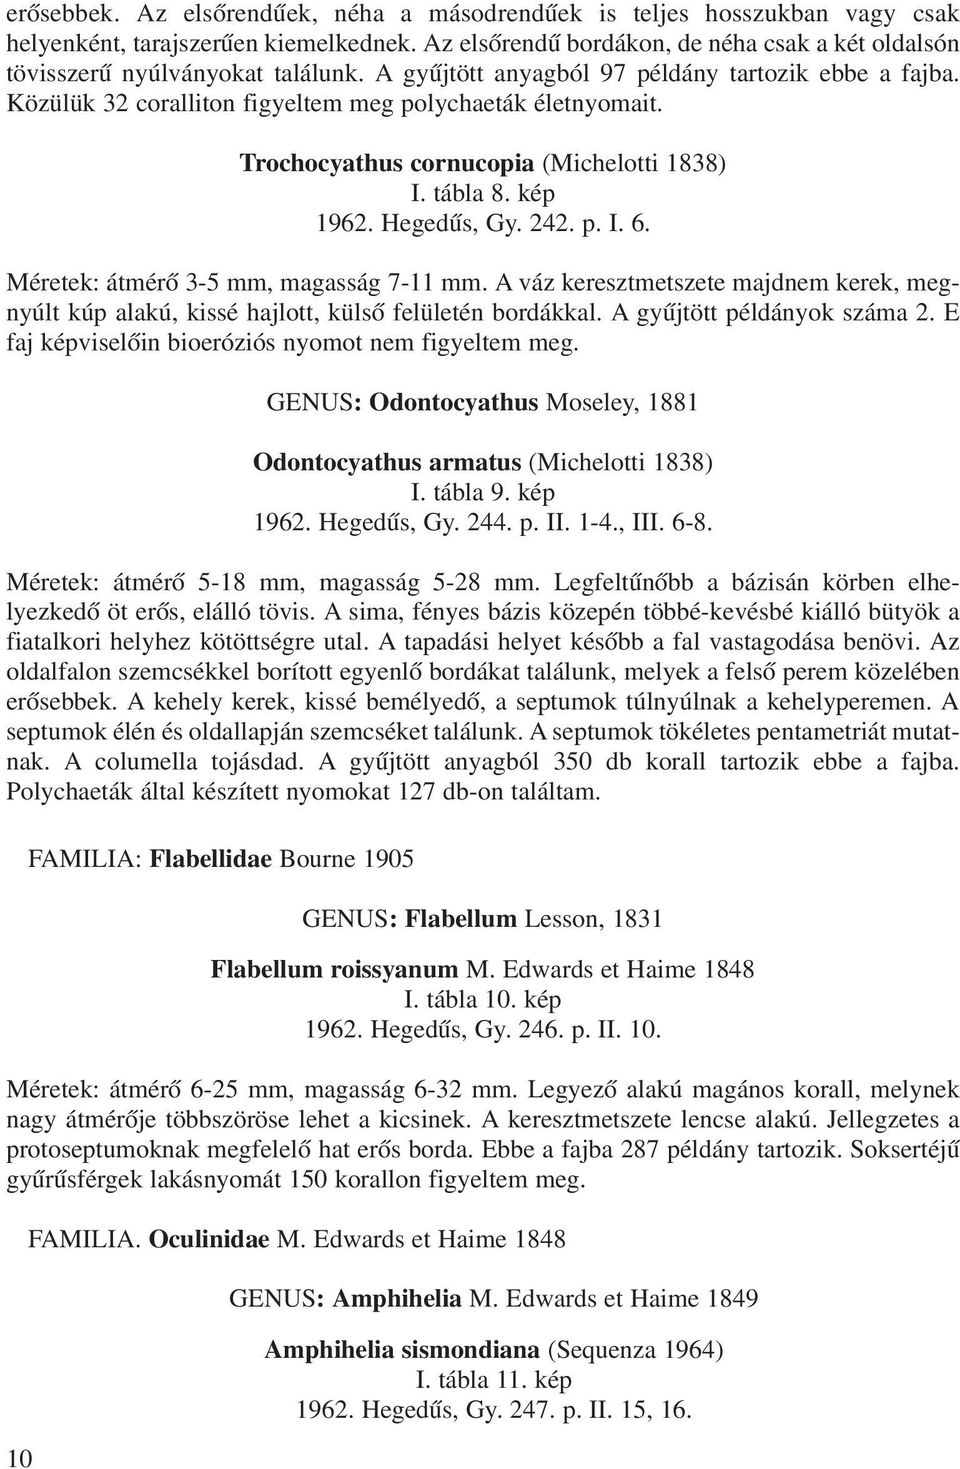 Trochocyathus cornucopia (Michelotti 1838) I. tábla 8. kép 1962. Hegedûs, Gy. 242. p. I. 6. Méretek: átmérõ 3-5 mm, magasság 7-11 mm.